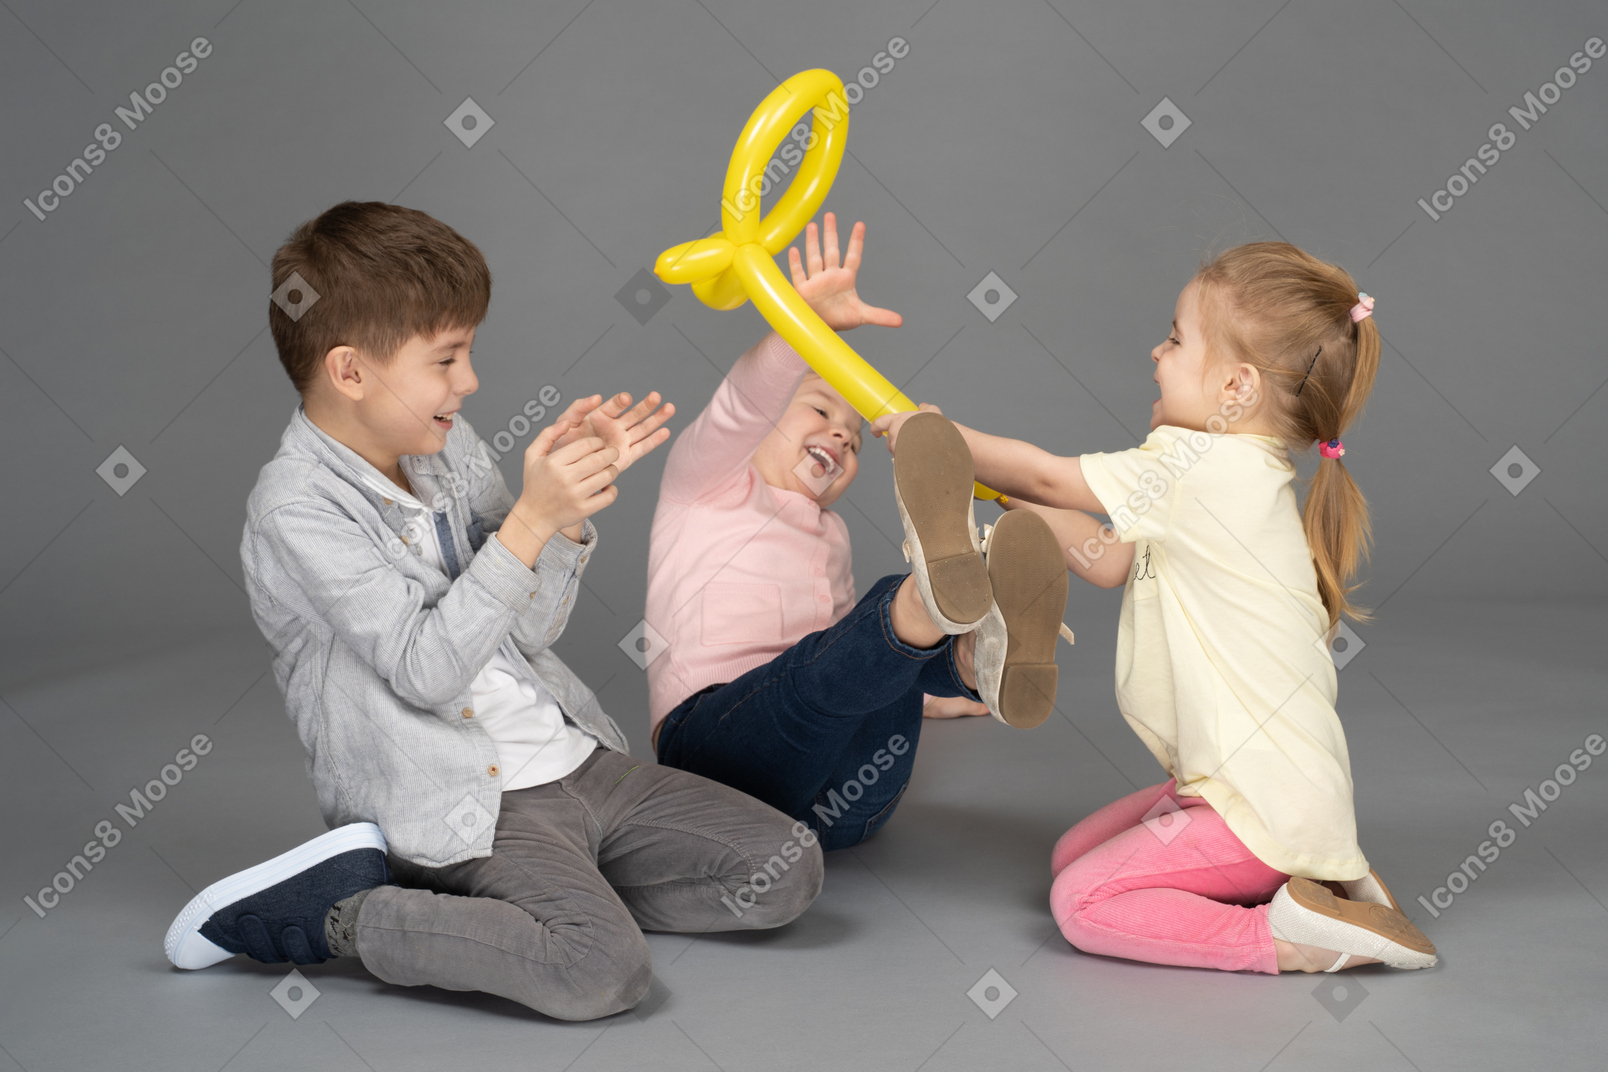 Bambini che si divertono a giocare con il palloncino giallo